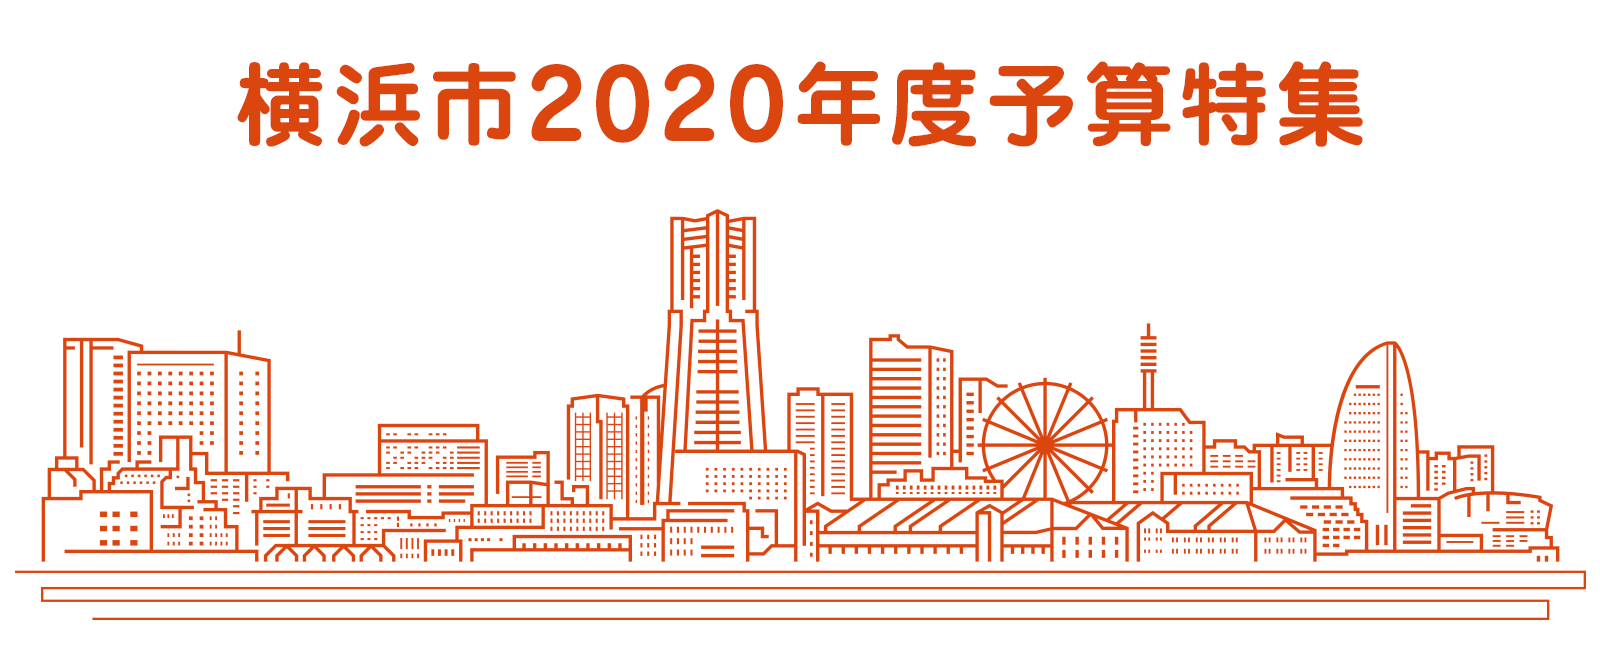 横浜市2020年度予算特集